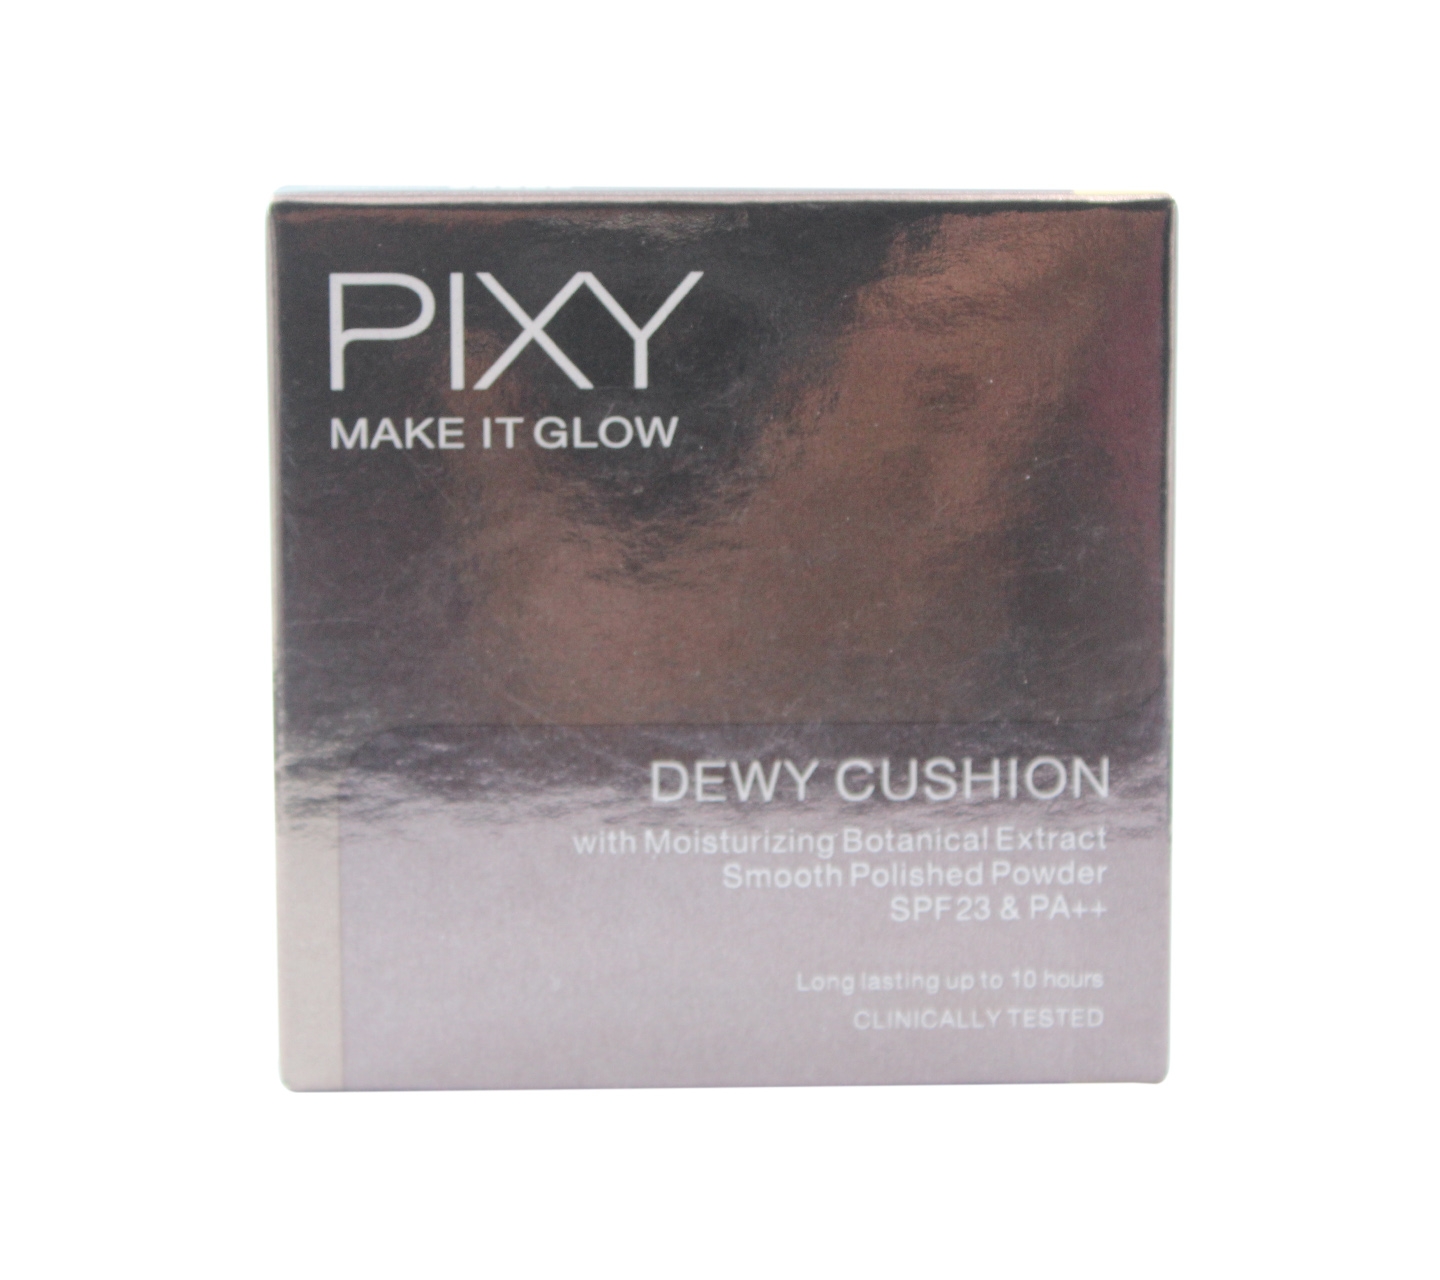 Pixy 301 Medium Beige Make It Glow Dewy Cushion Faces